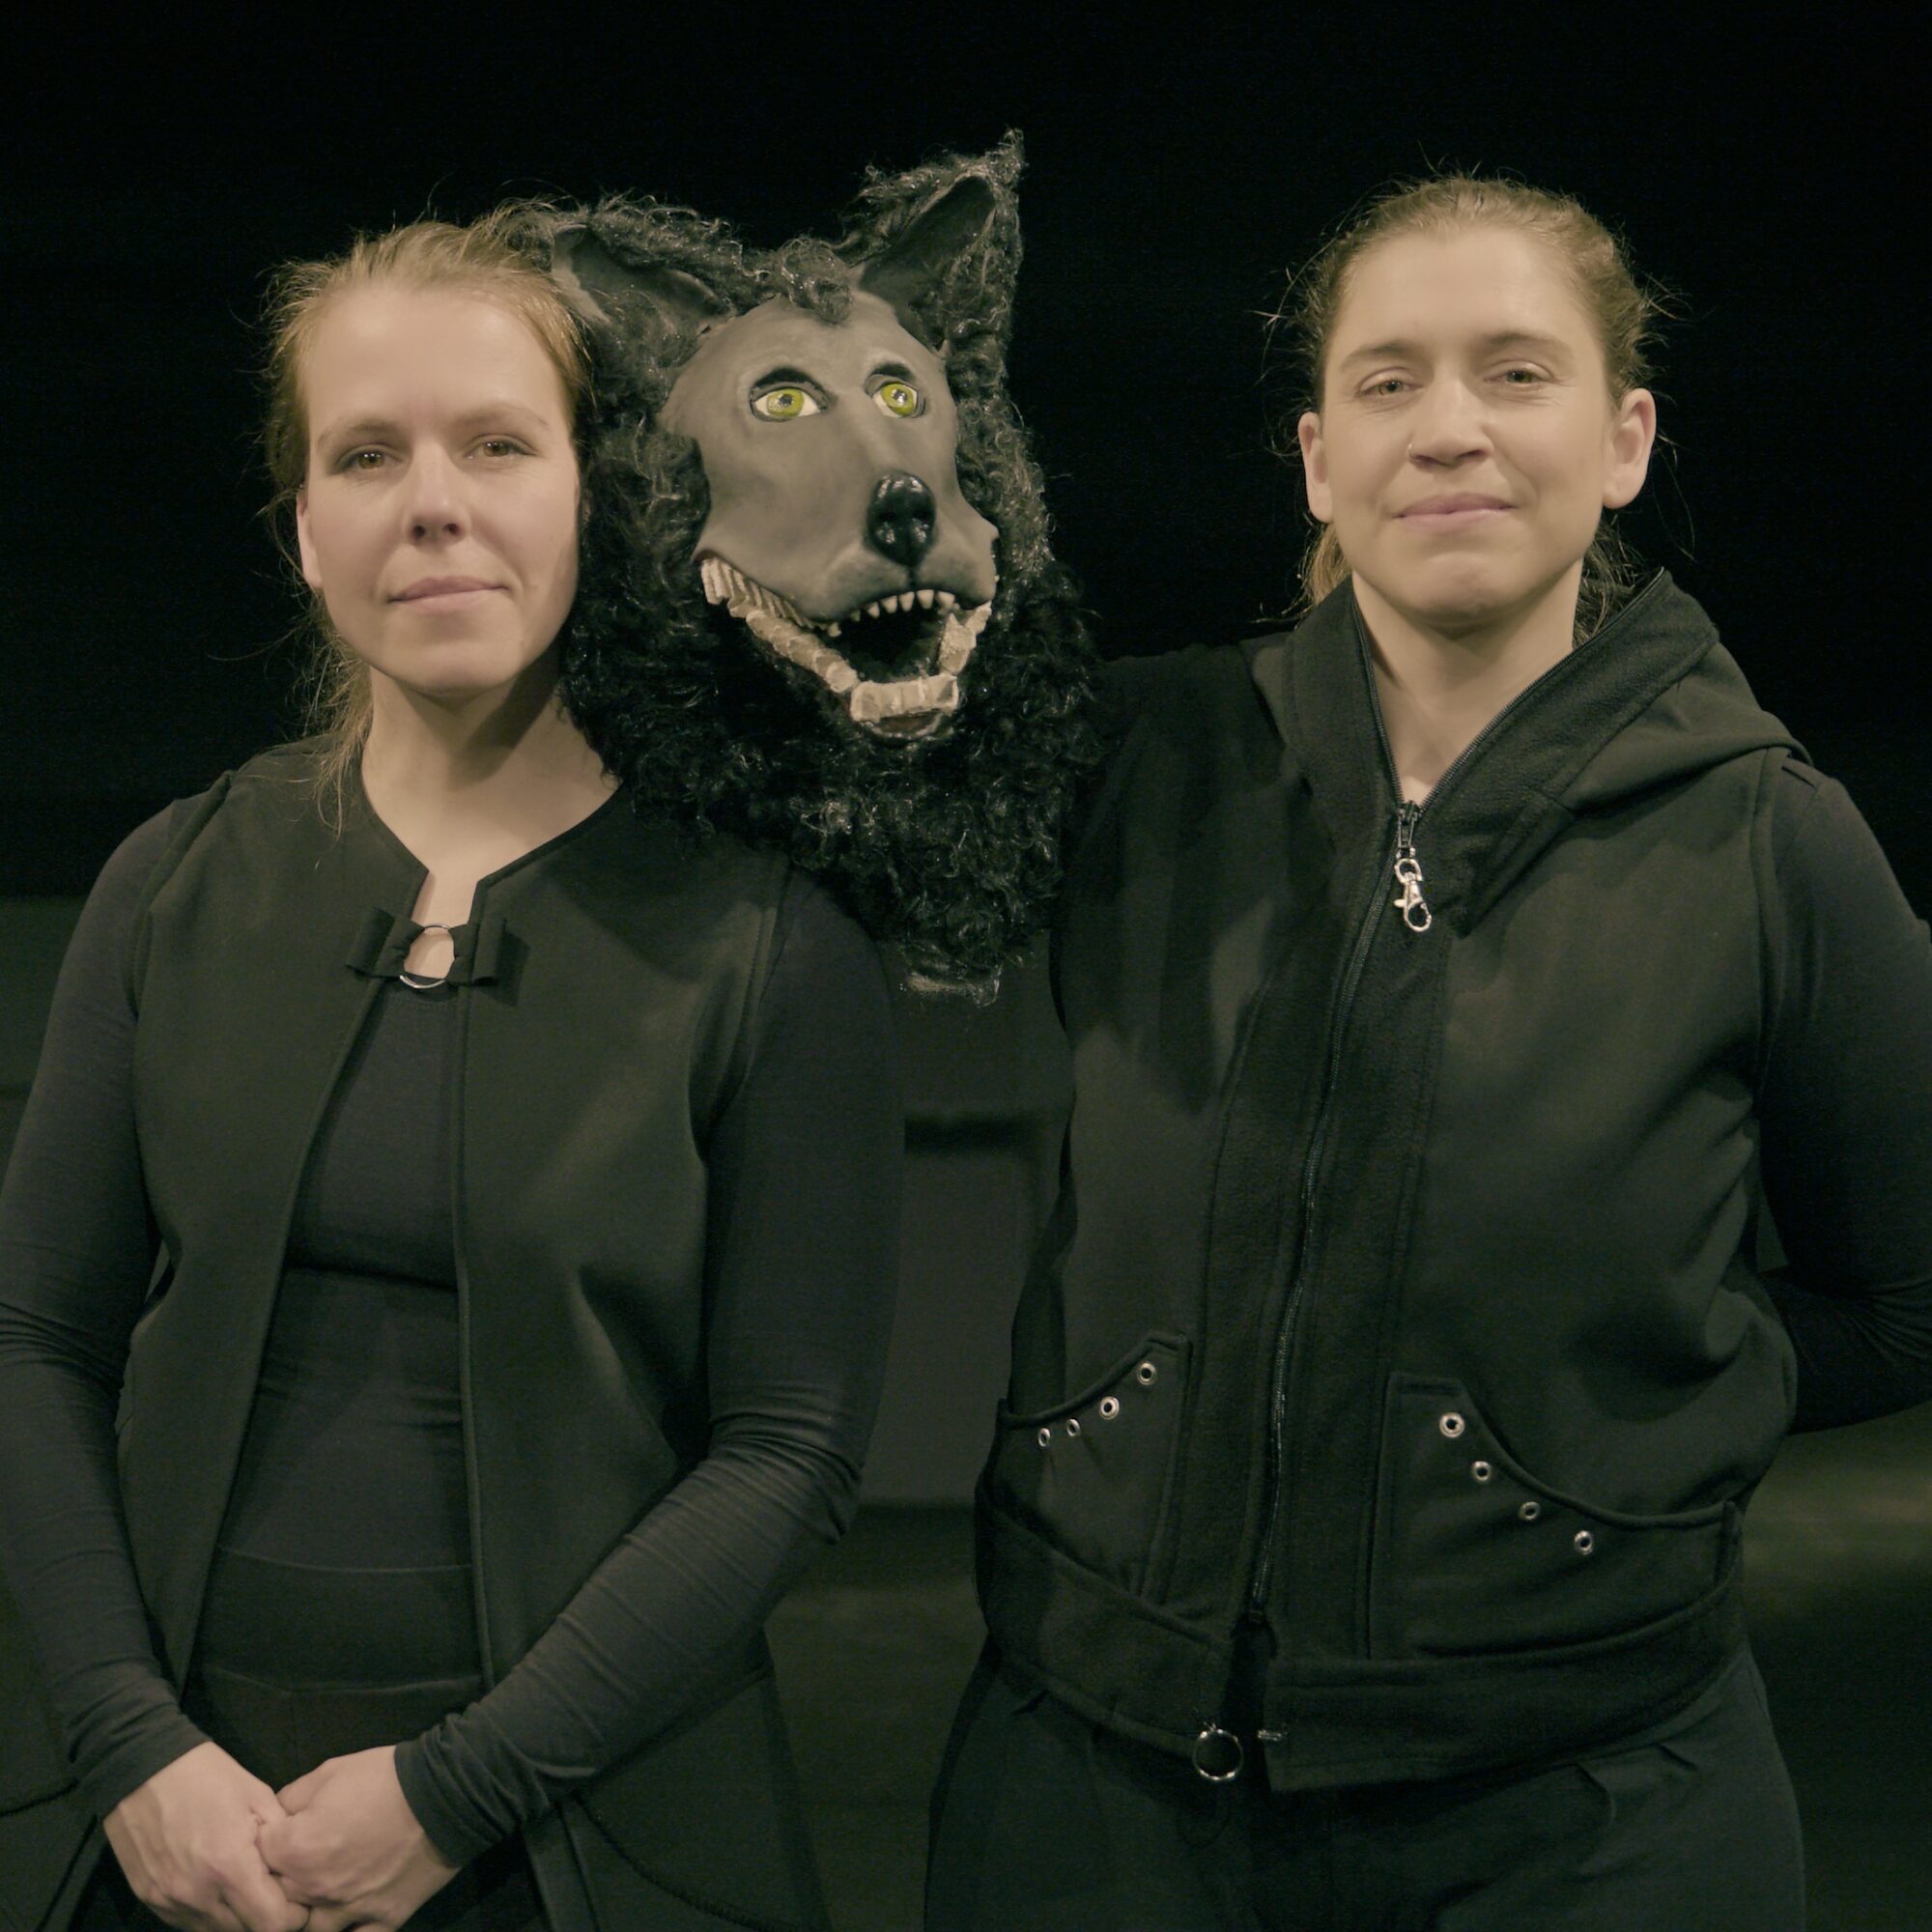 Theaterpädagogin Anja Schwede, der schwarze Hund und Figurenspielerin Julia Raab (v.l.n.r.); Foto: Christoph Bockisch für MDR Kultur